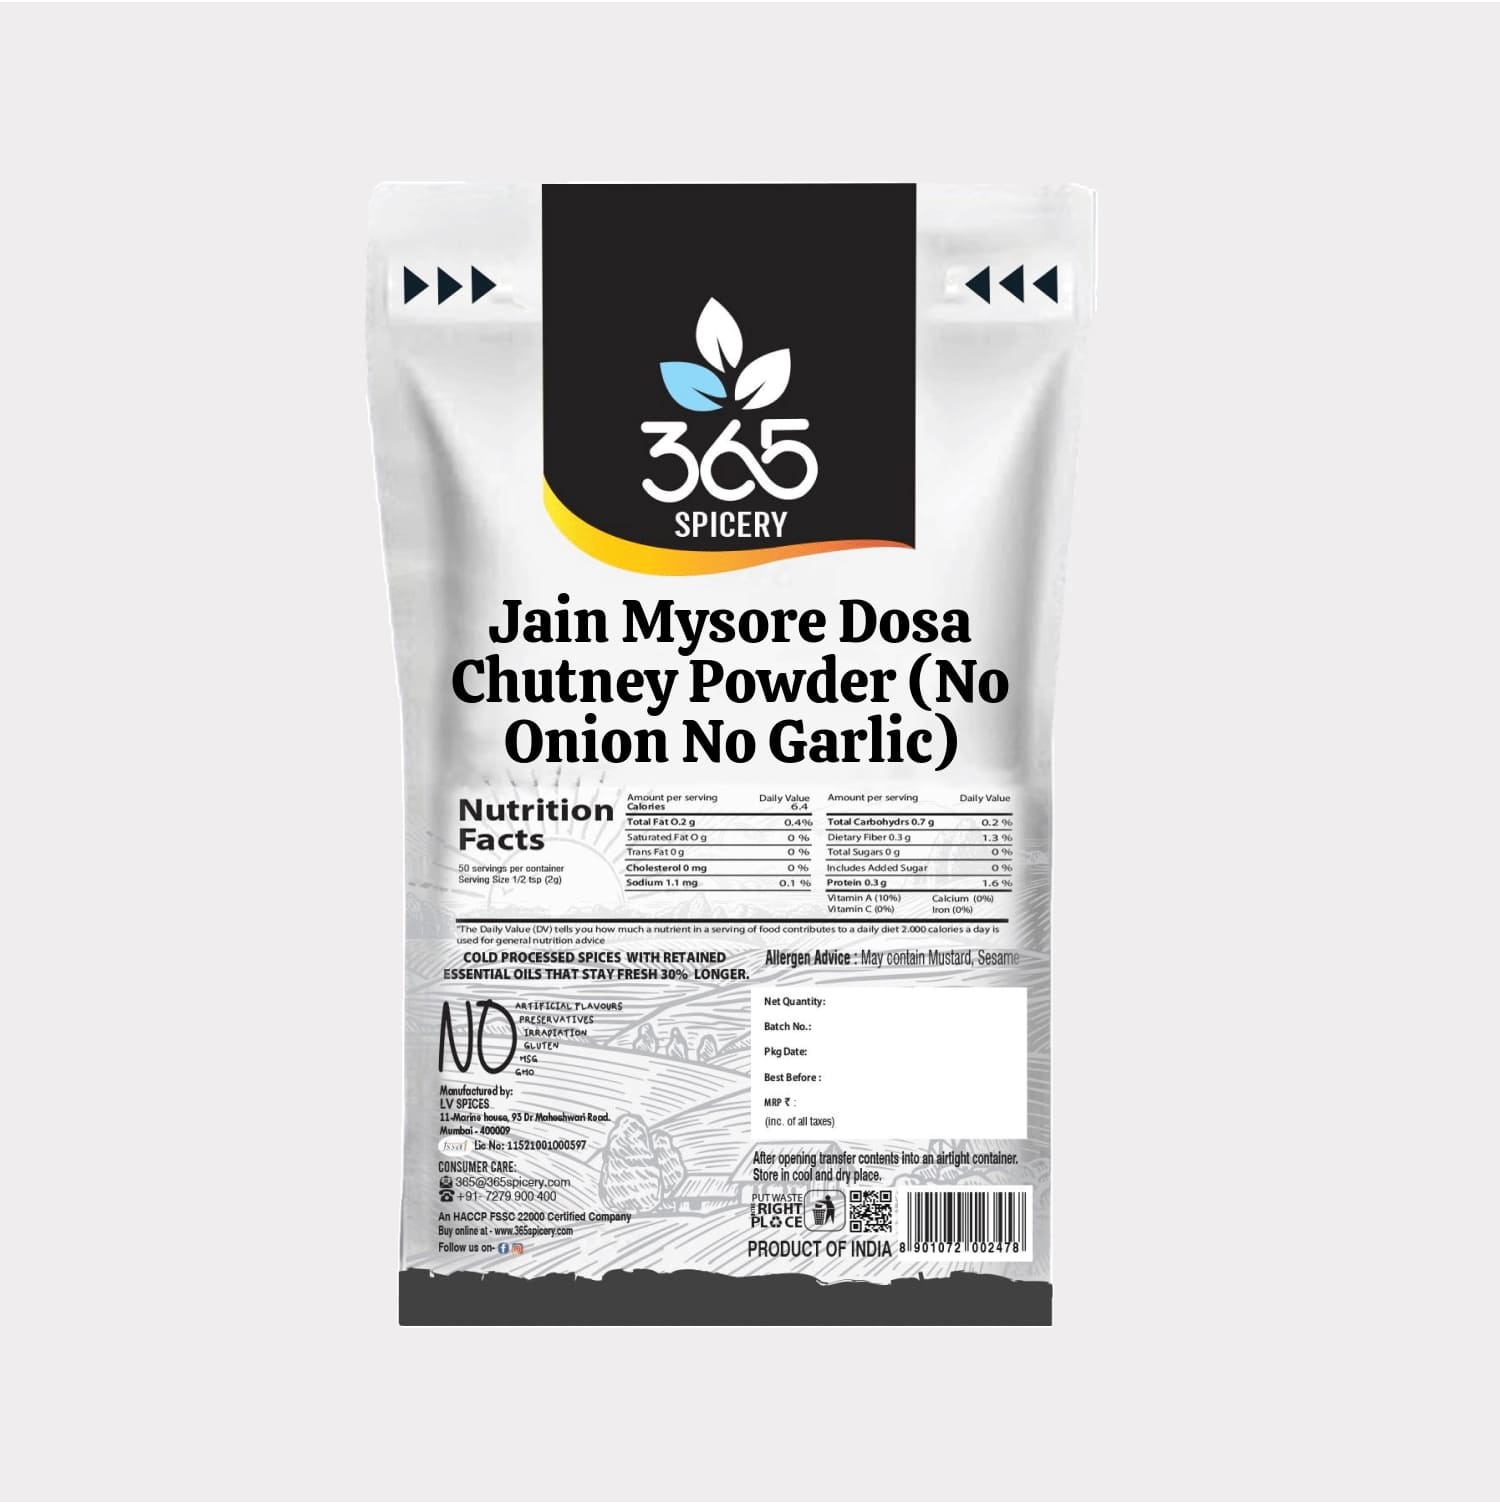 Jain Mysore Dosa Chutney Powder (No Onion No Garlic)